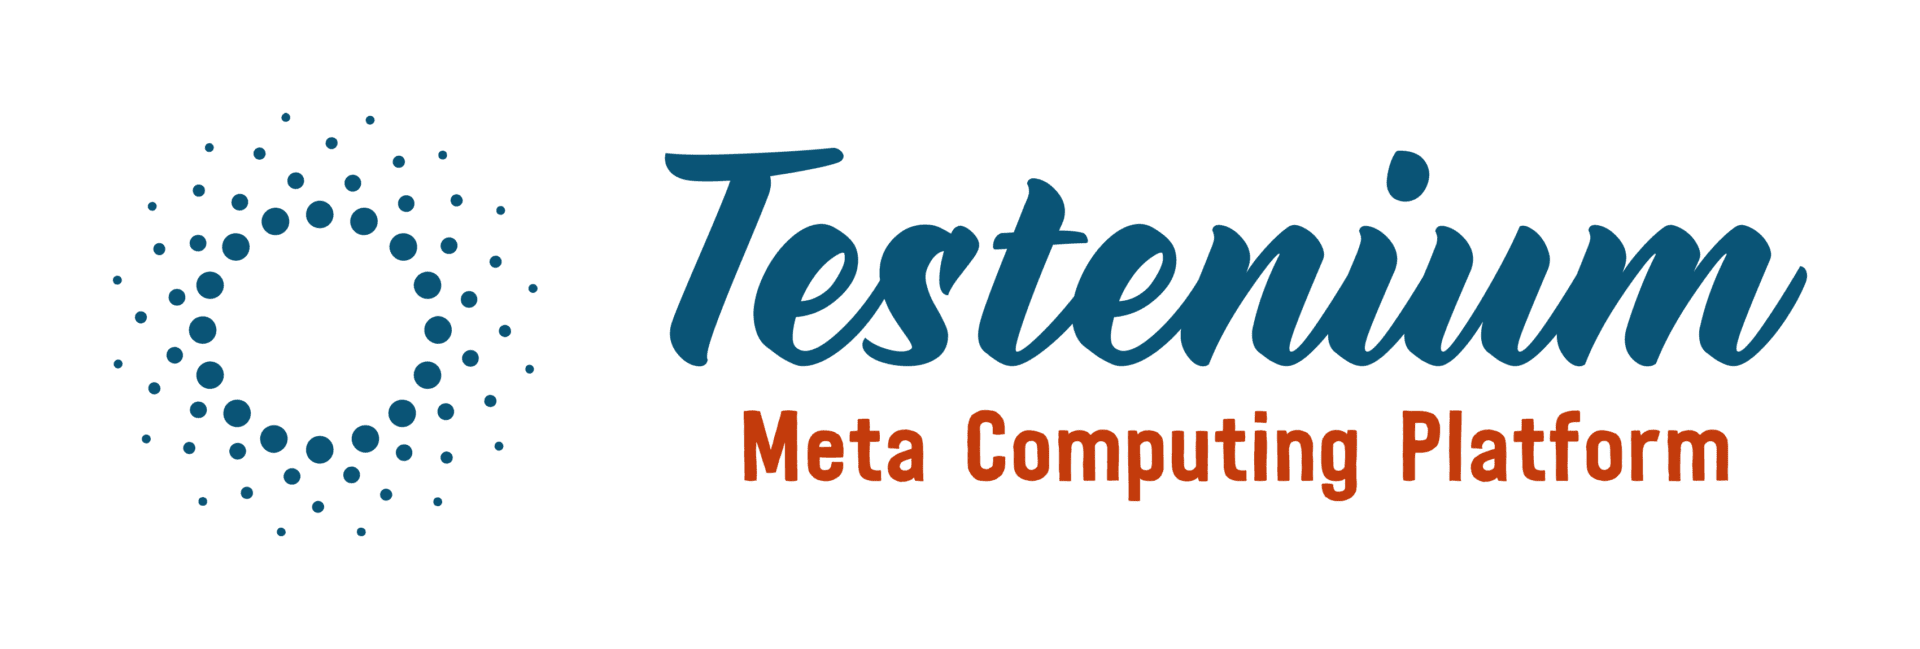 Testenium Logo